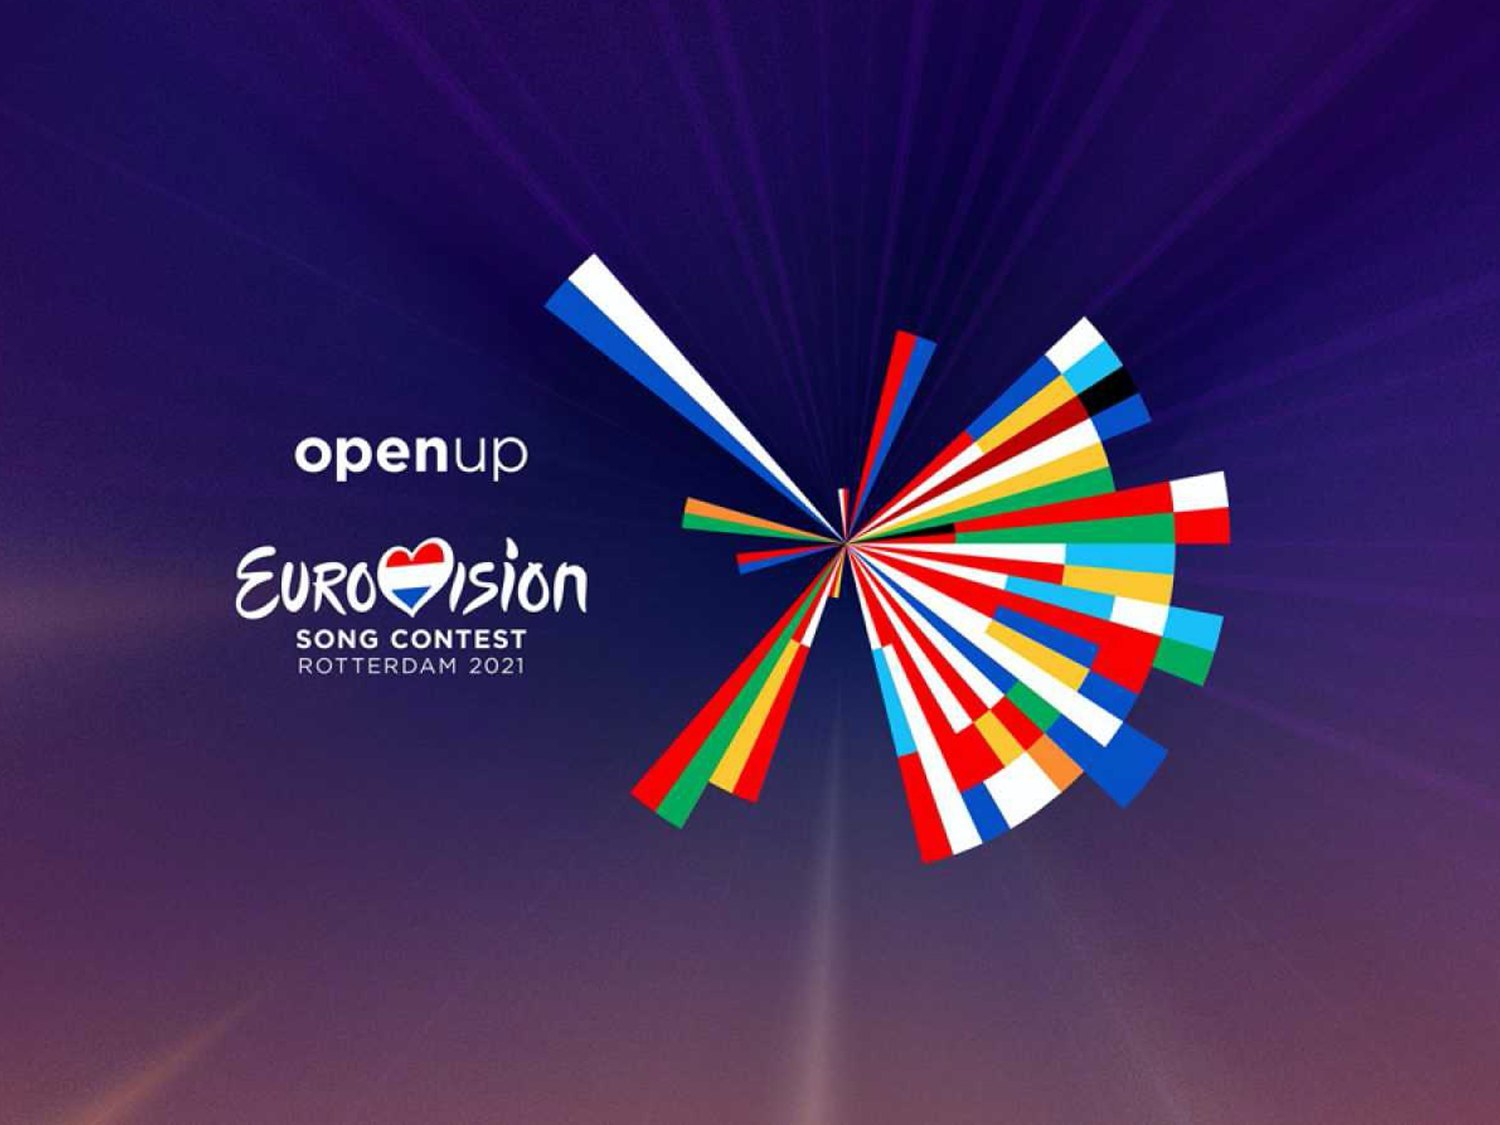 La UER presenta el protocolo para un Eurovisión 2021 seguro en Róterdam